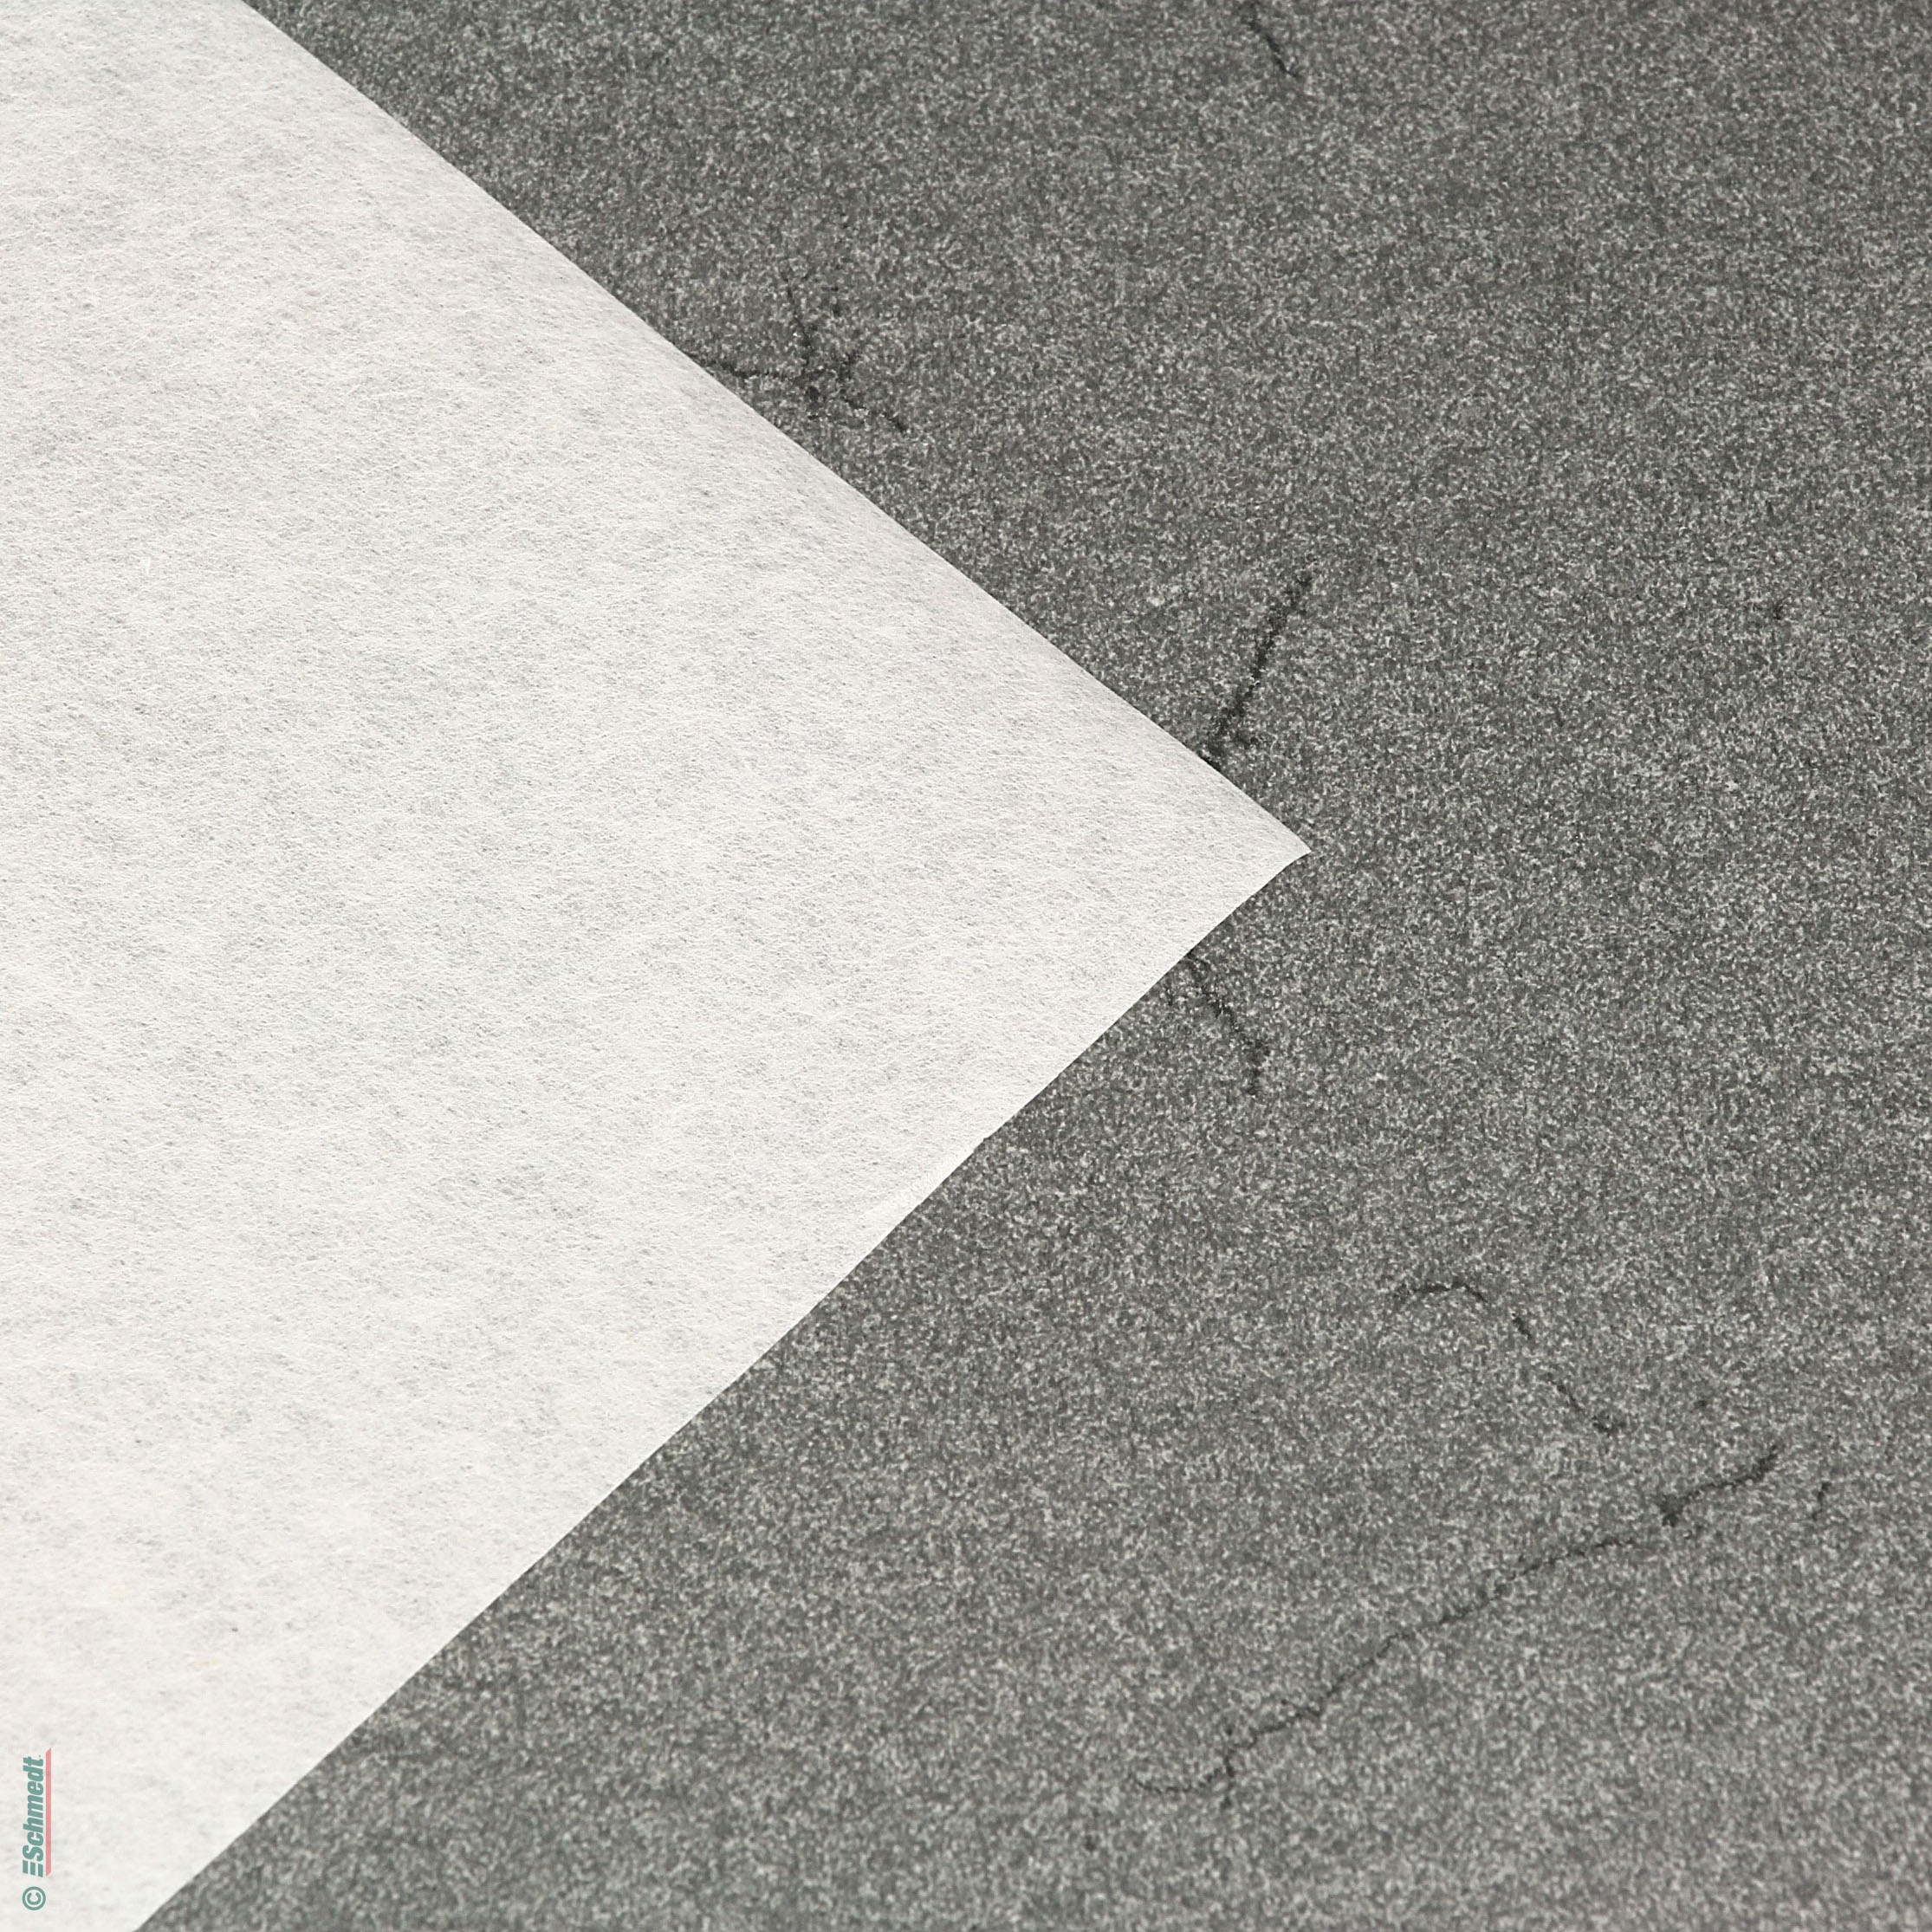 Japan-Seidenpapier Tengujo - Format: 49 x 69 cm - Schmalbahn - säurefrei - Restaurierungsarbeiten wie z. B. Reinigung von Skulpturen, Spiege...